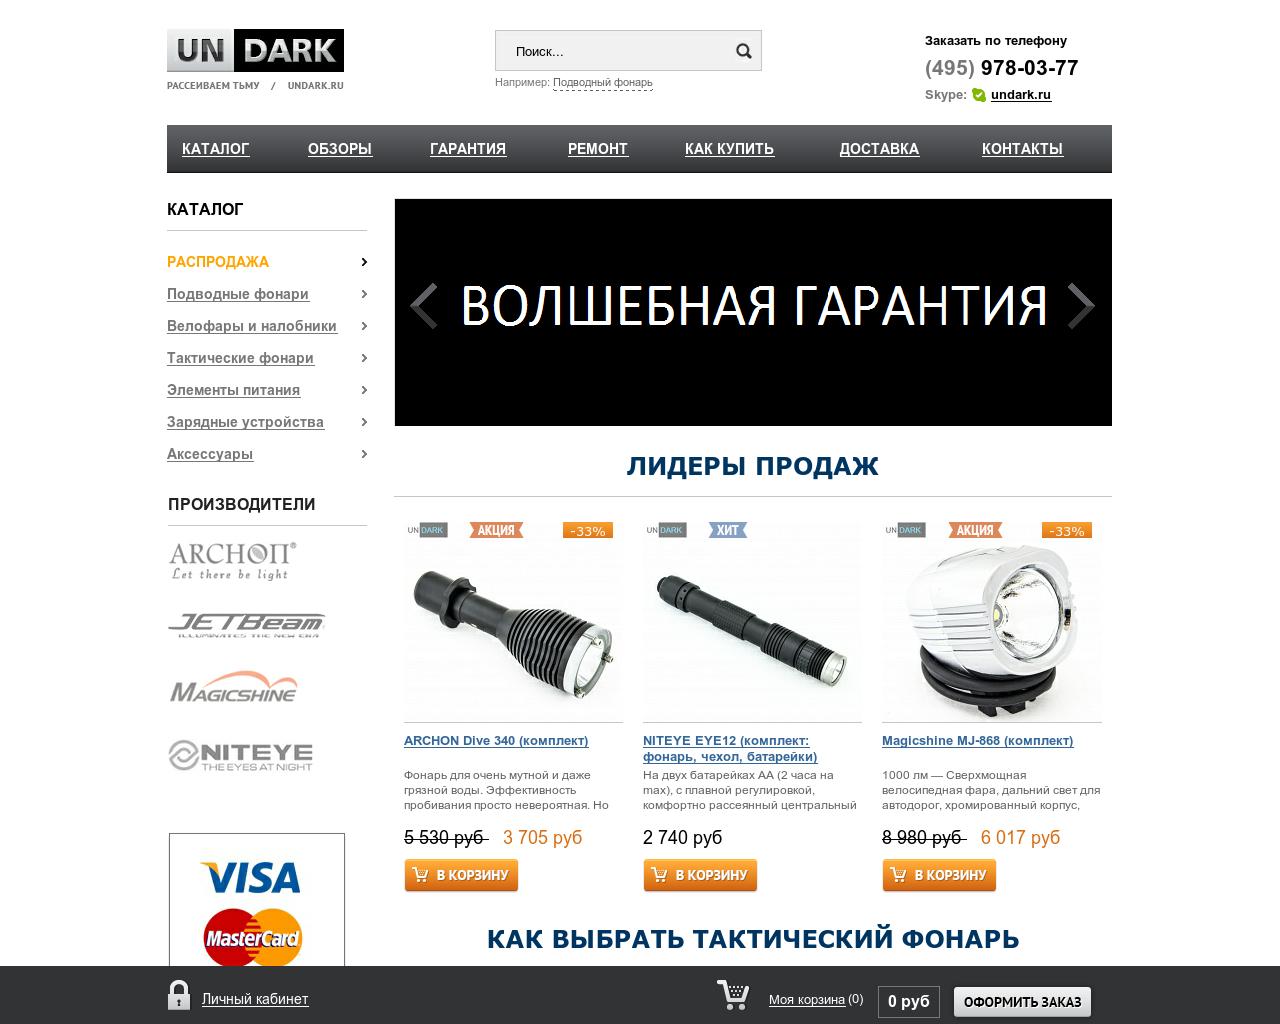 Изображение сайта undark.ru в разрешении 1280x1024